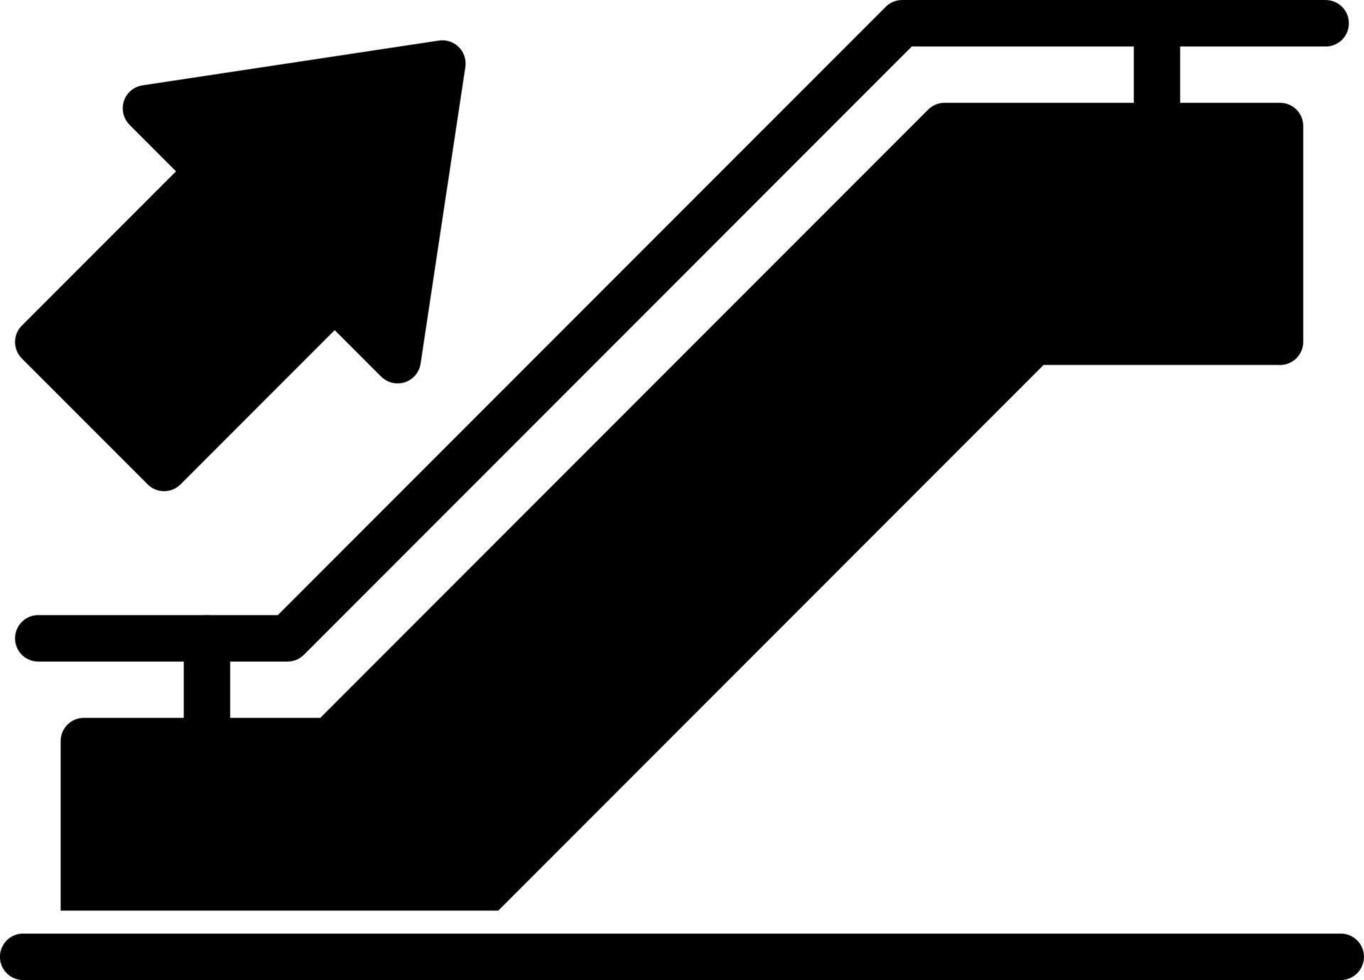 Rolltreppen-Vektor-Icon-Design vektor